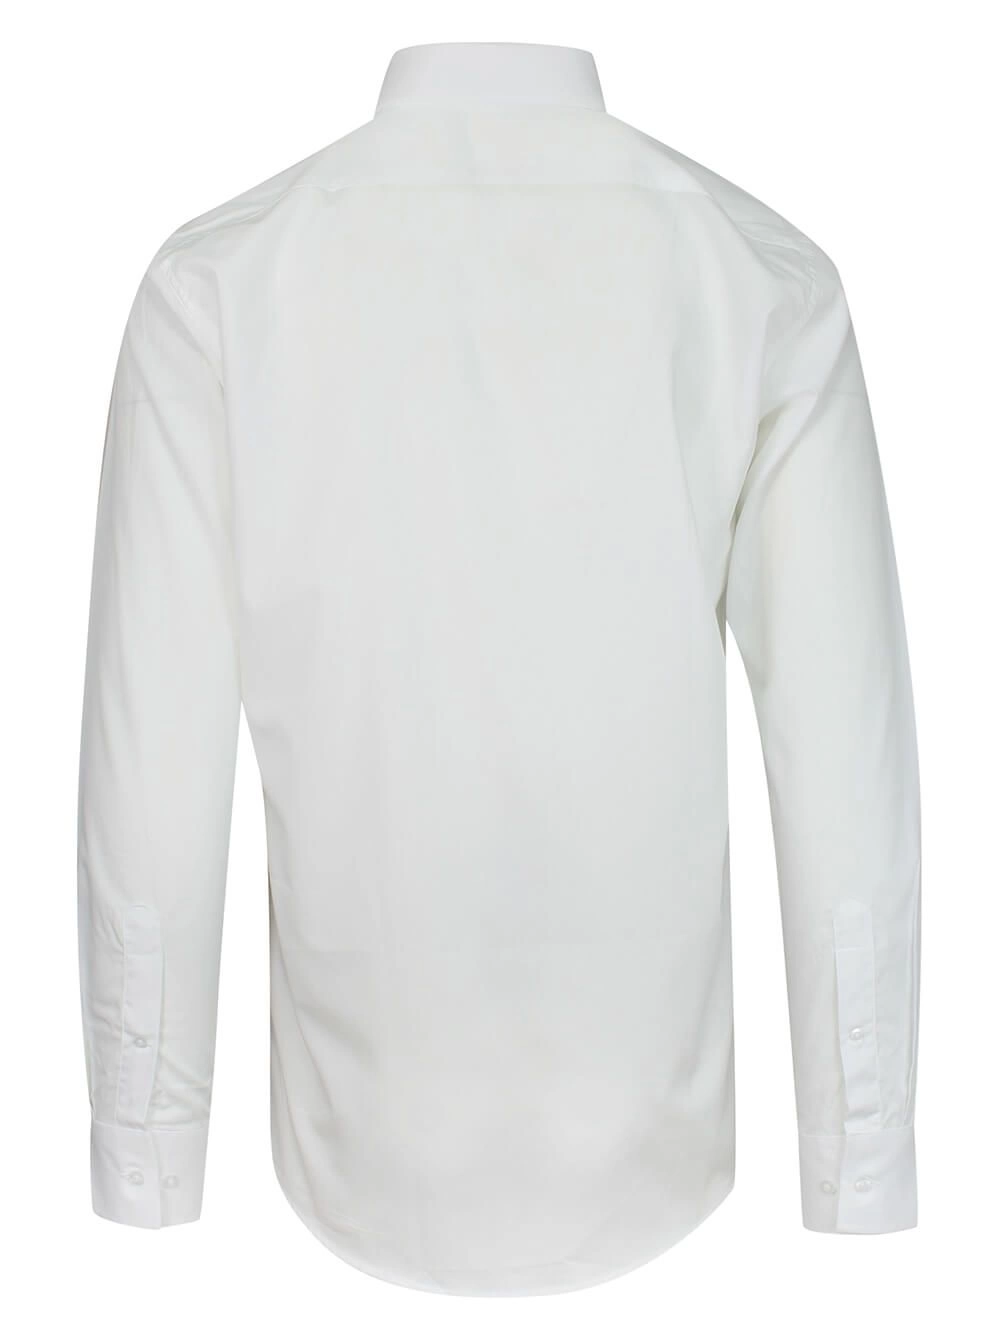 Koszula Męska, Elegancka Biała z Długim Rękawem, 100% Bawełna, Taliowana -CHIAO